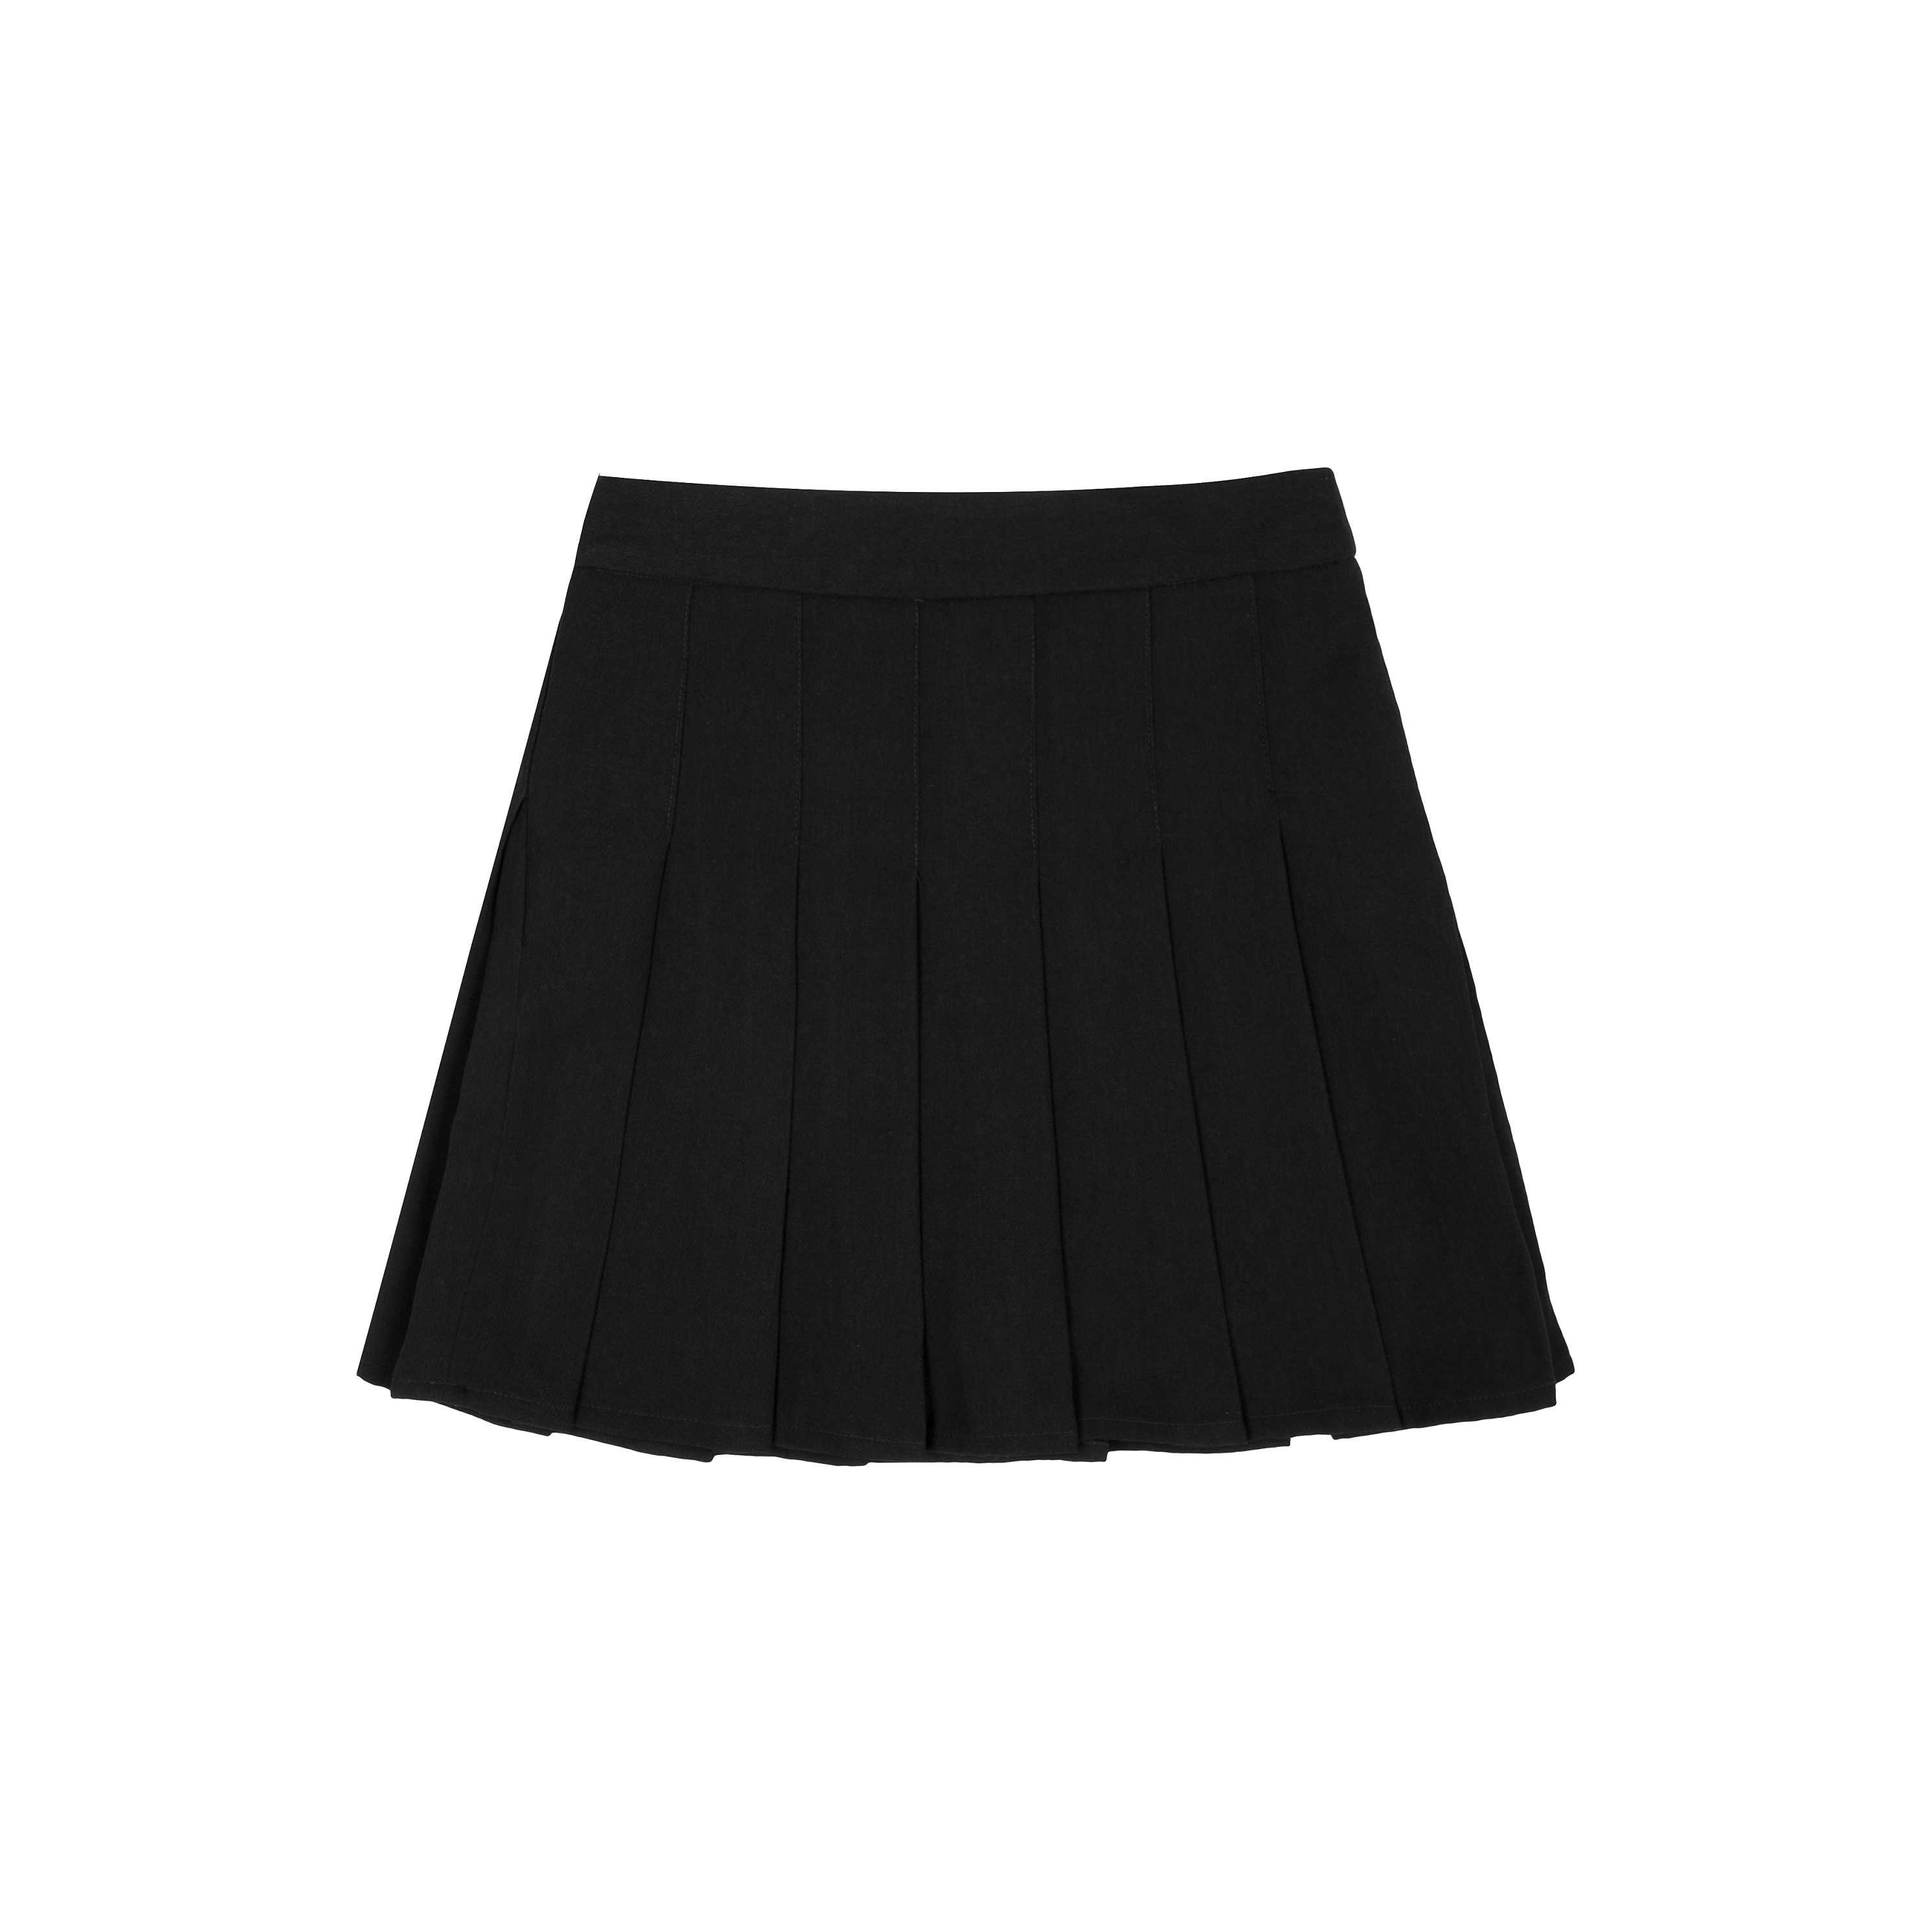 Chân váy tennis dáng ngắn màu đen, năng động cá tính | Lazada.vn